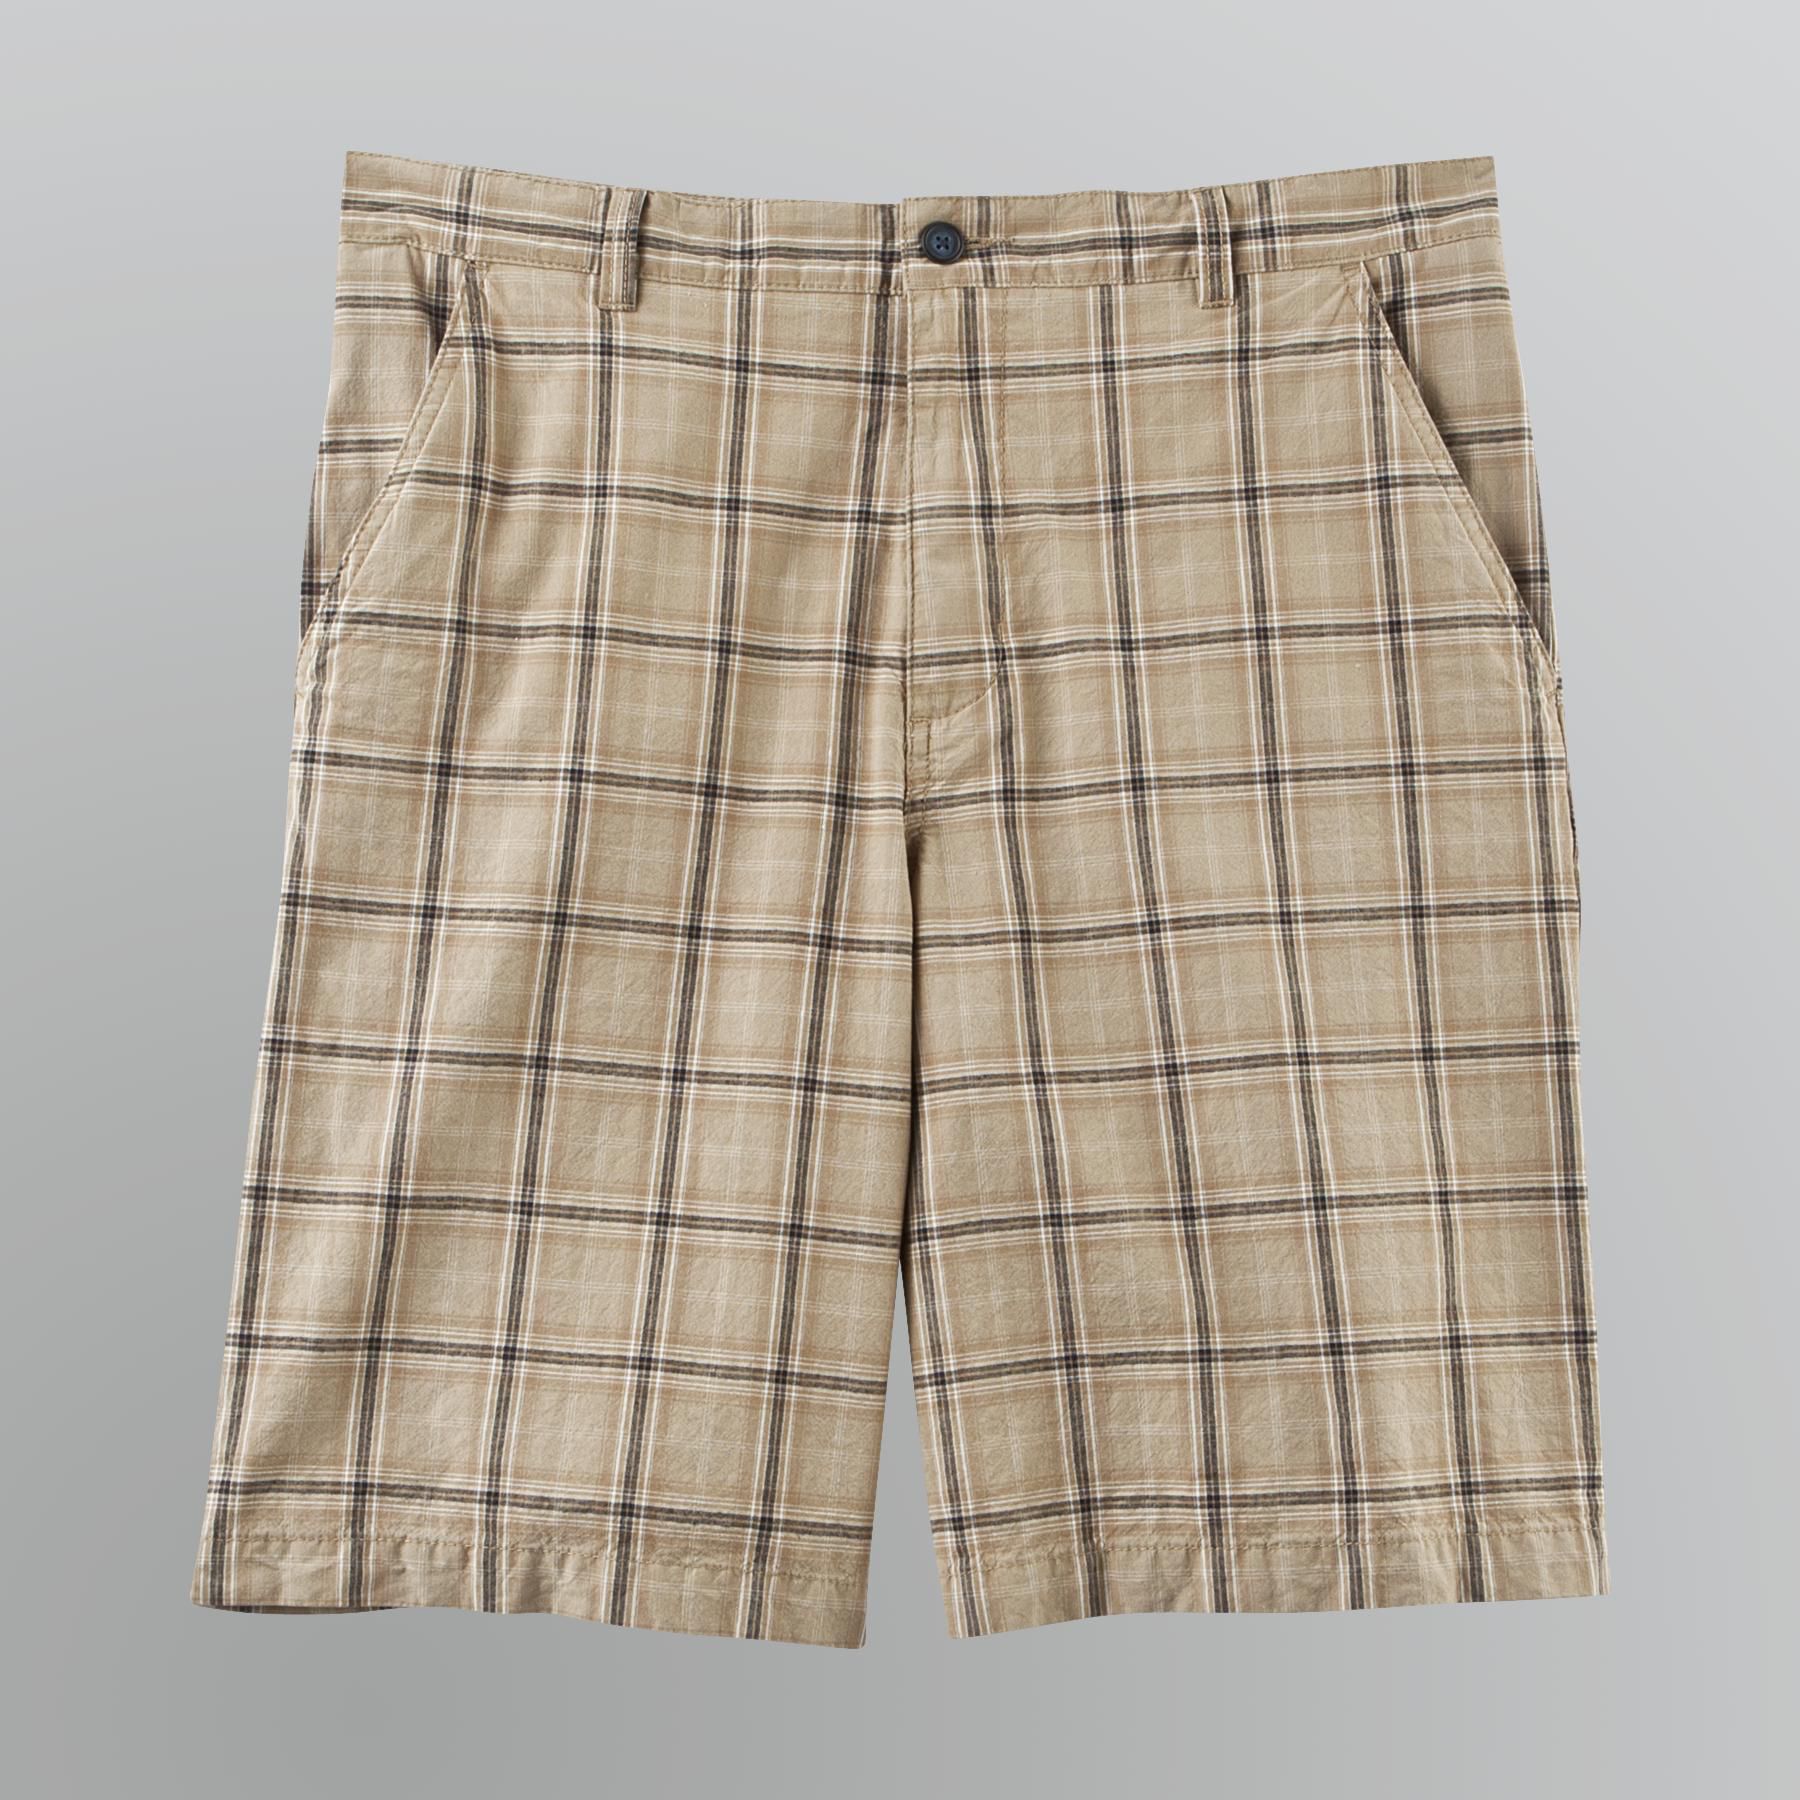 Covington Men's Plaid Shorts